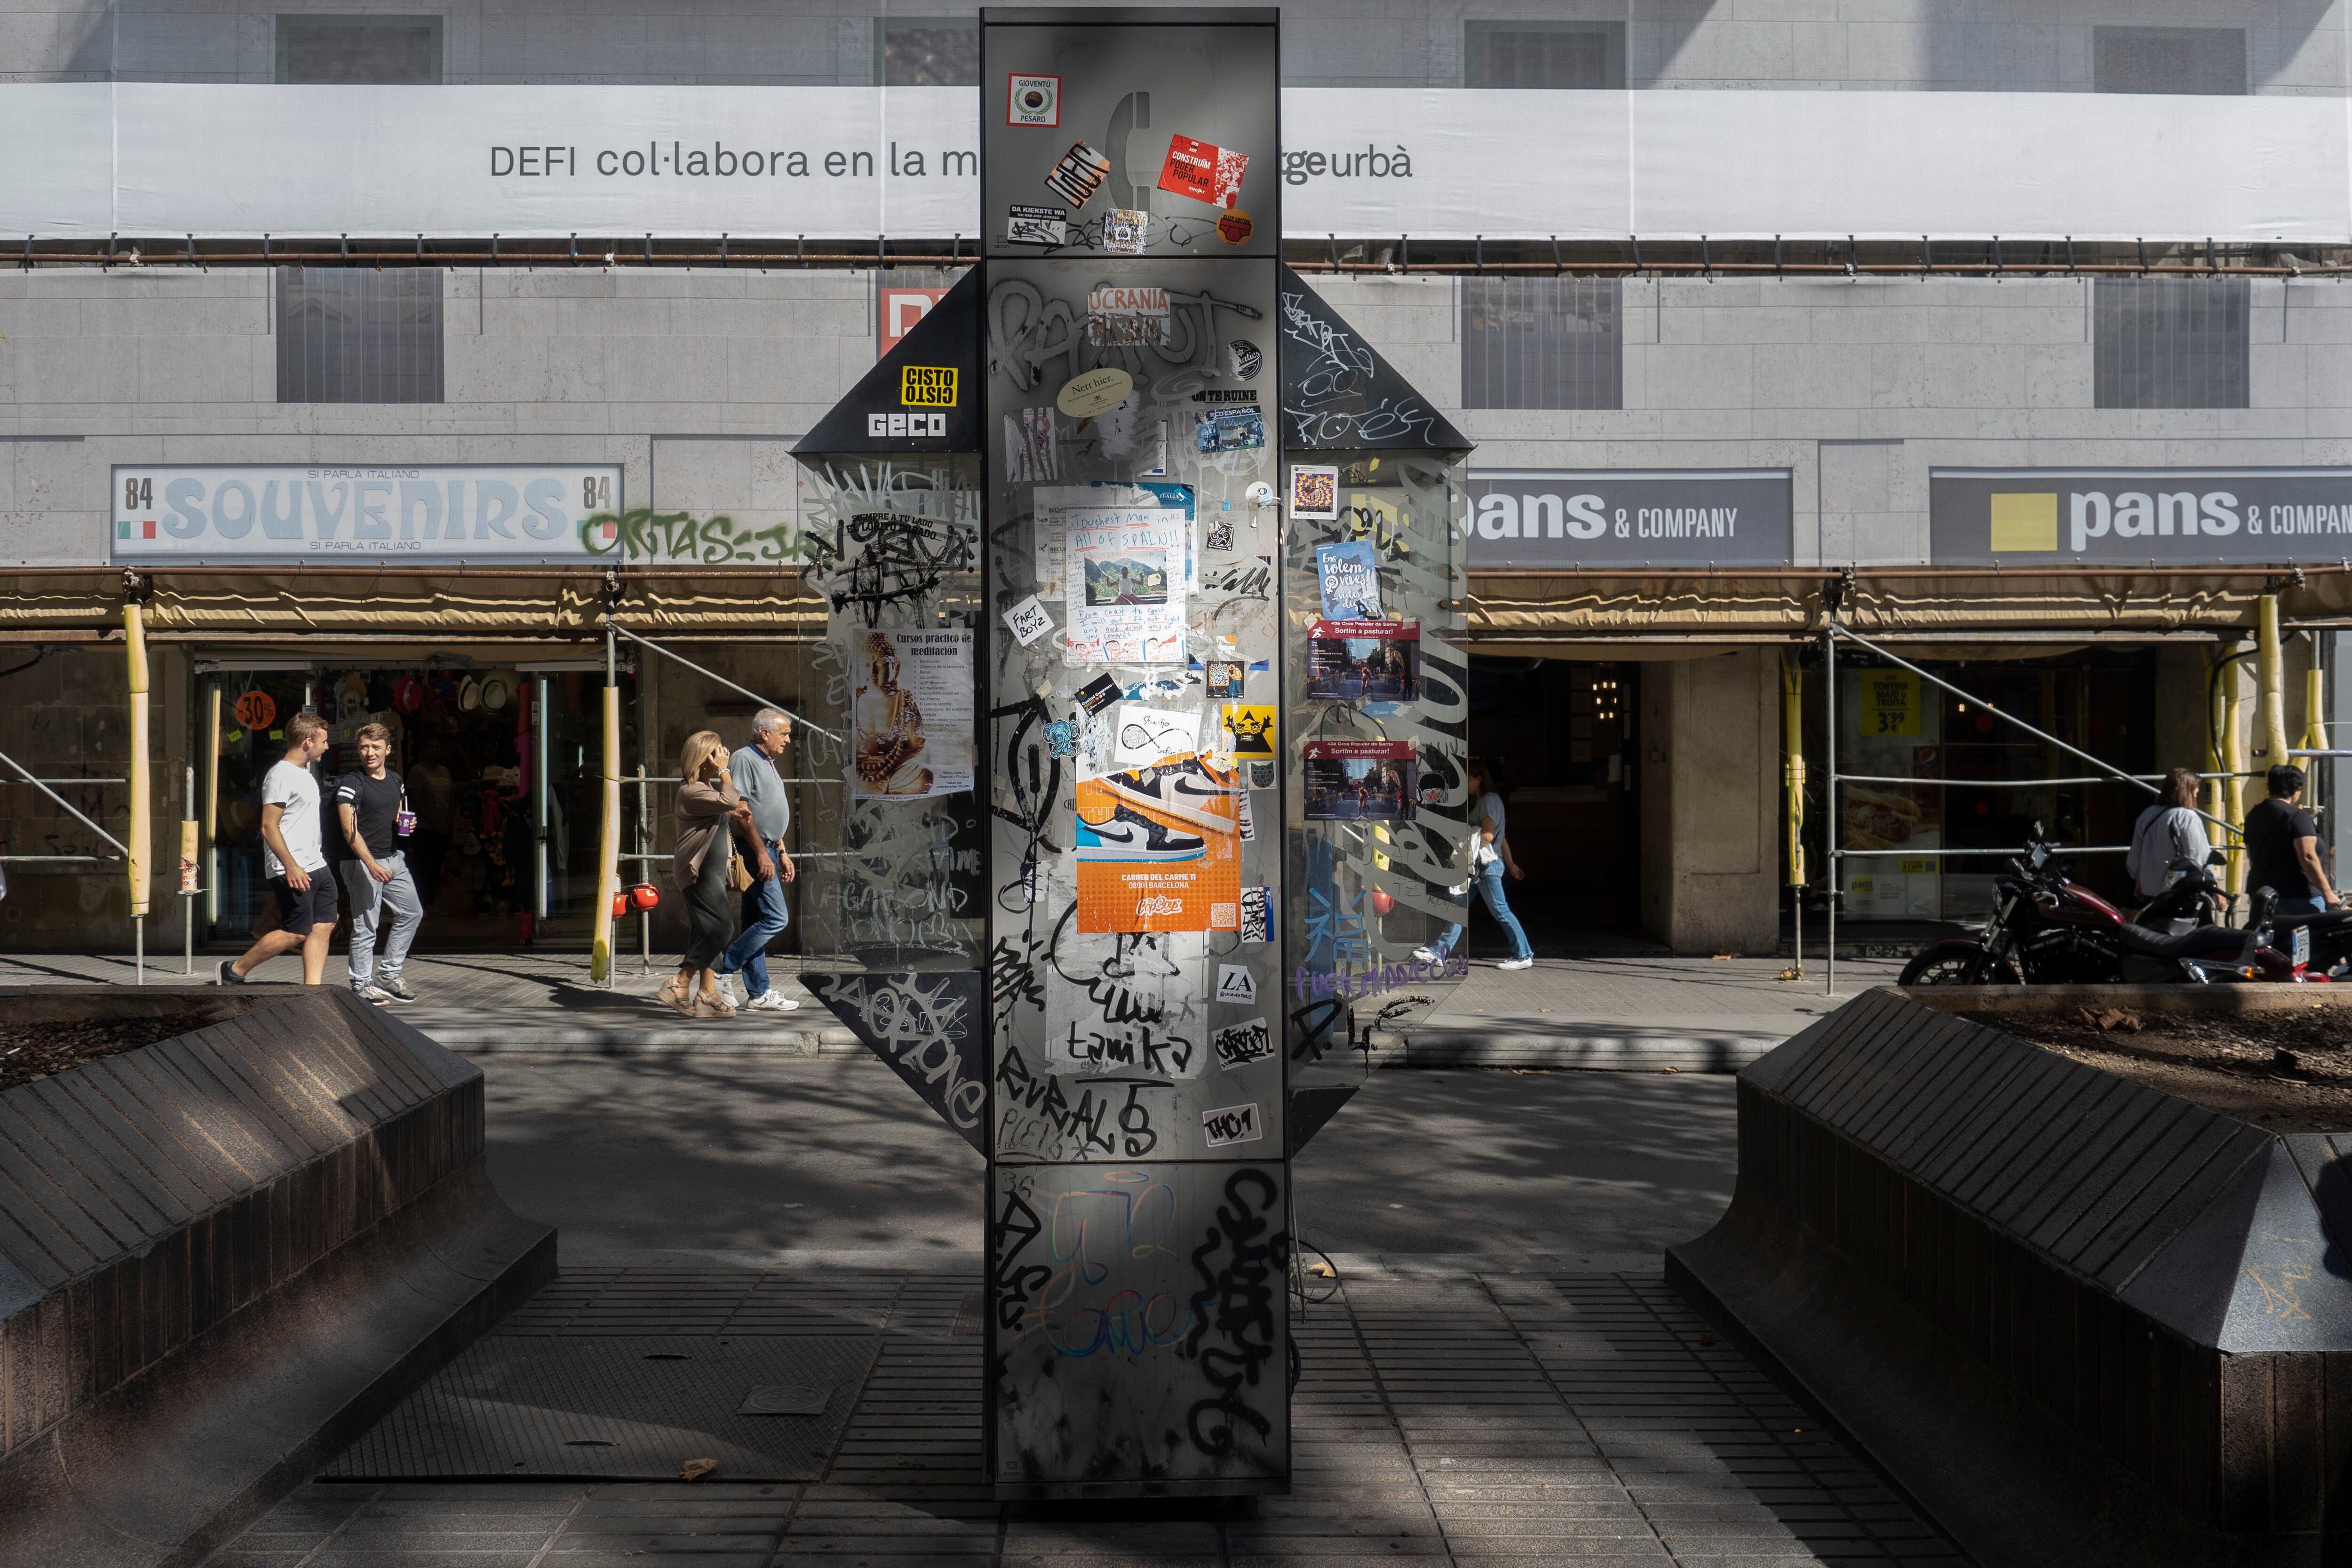 Cabina telefónica vandalizada, con pintadas e inutilizada, este miércoles en la Rambla de Barcelona.